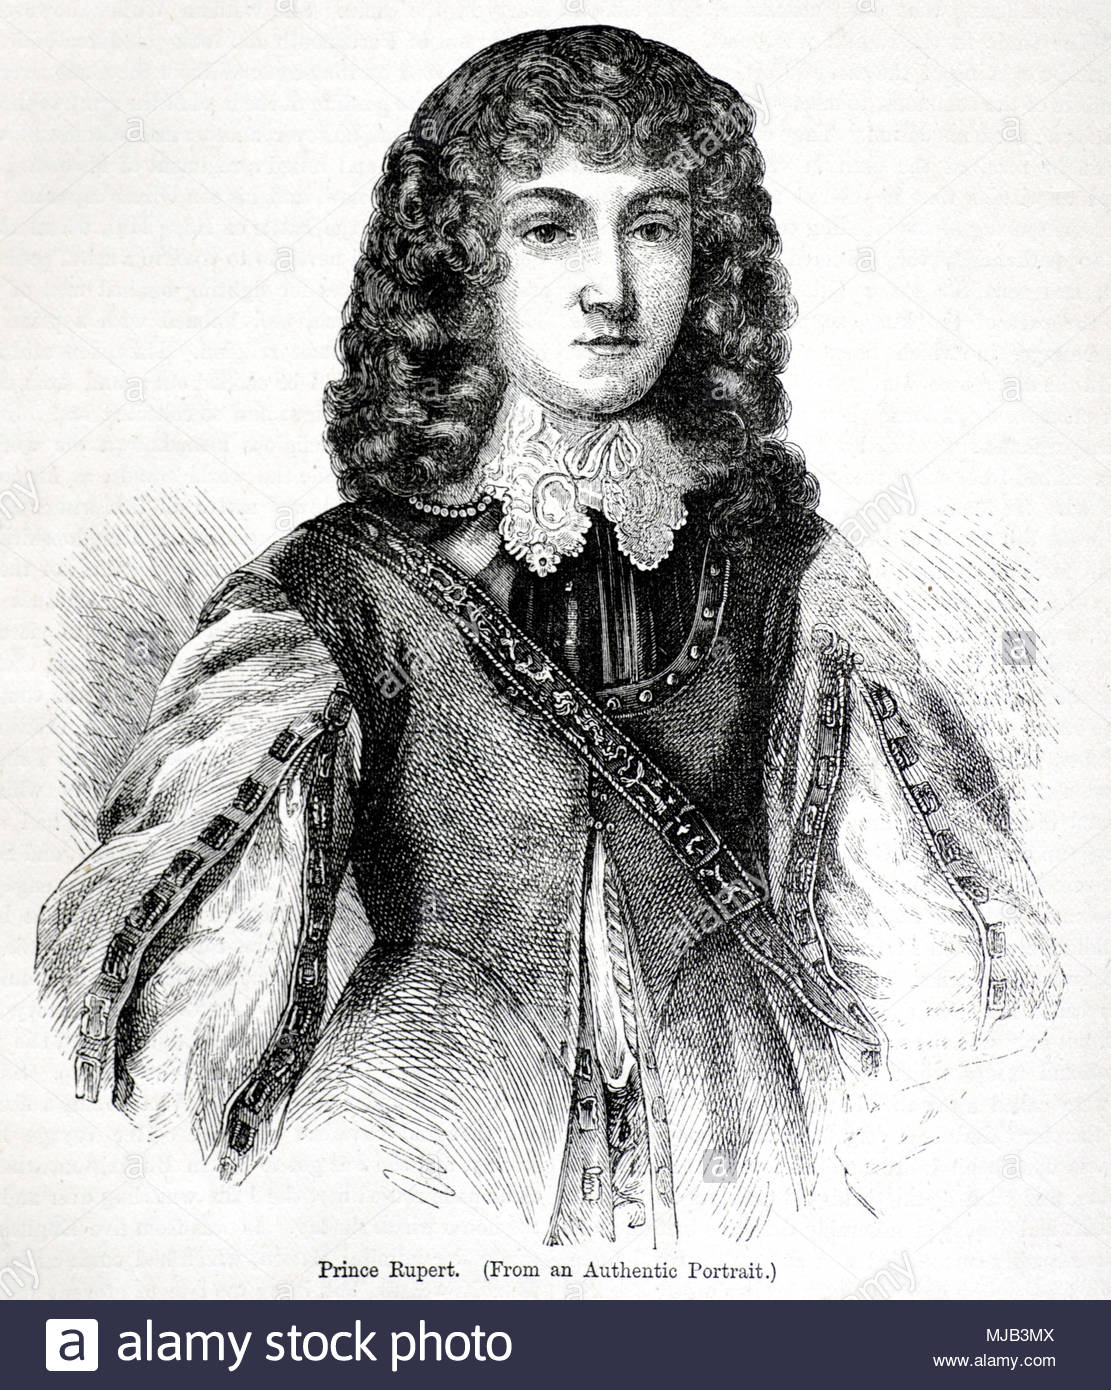 Prince Rupert von Rhein, Herzog von Cumberland 1619 - 1682 war ein deutscher Soldat, Admiral, Wissenschaftler, kolonialer Gouverneur während des 17. Jahrhunderts. Er kam zuerst zum Vorsprung als Kavalier Kavallerie Commander während des Englischen Bürgerkriegs, antike Abbildung ca. 1880 Stockfoto